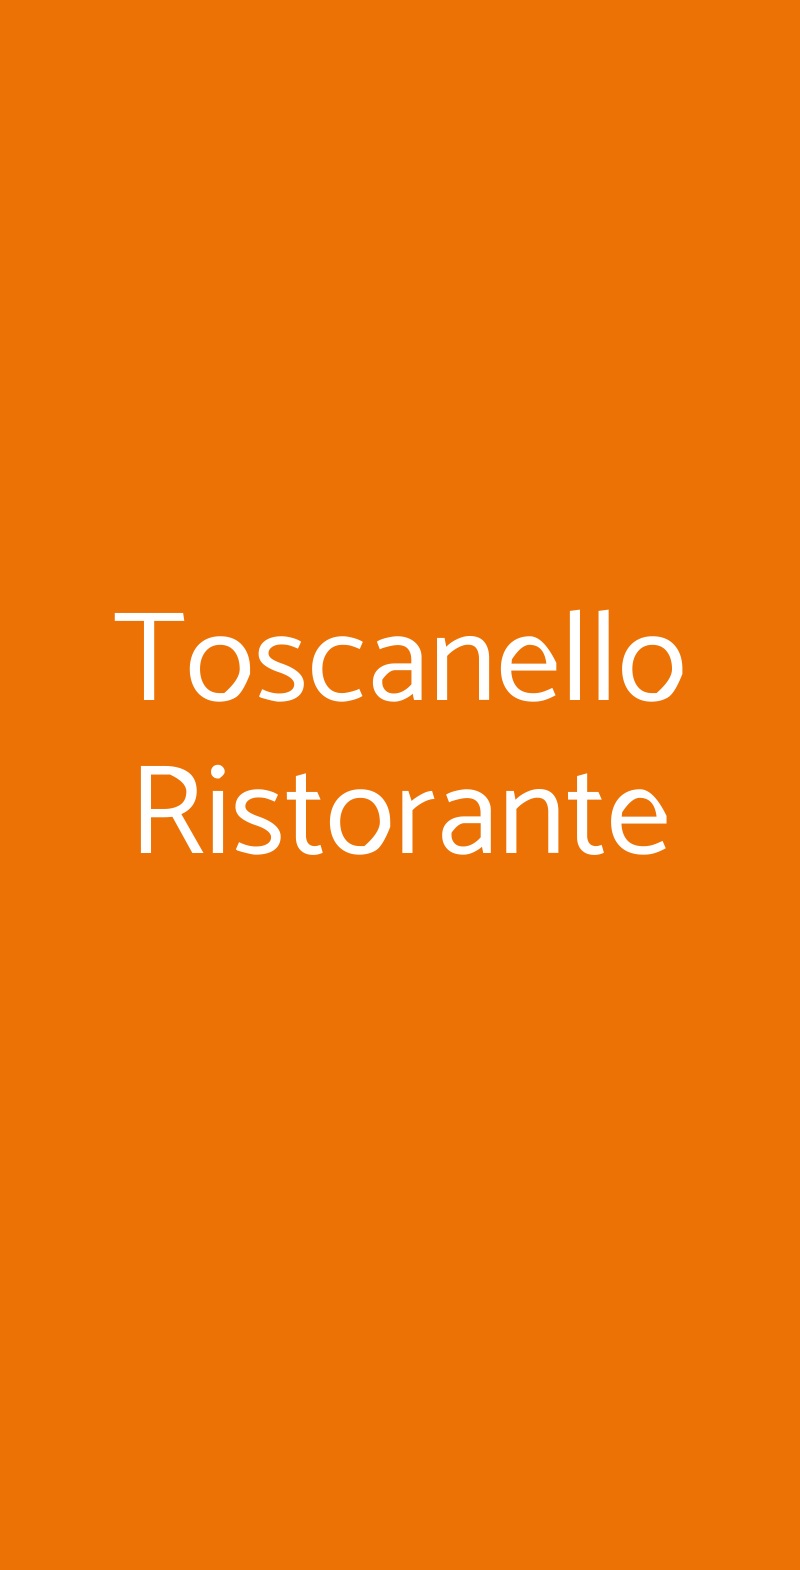 Toscanello Ristorante Firenze menù 1 pagina